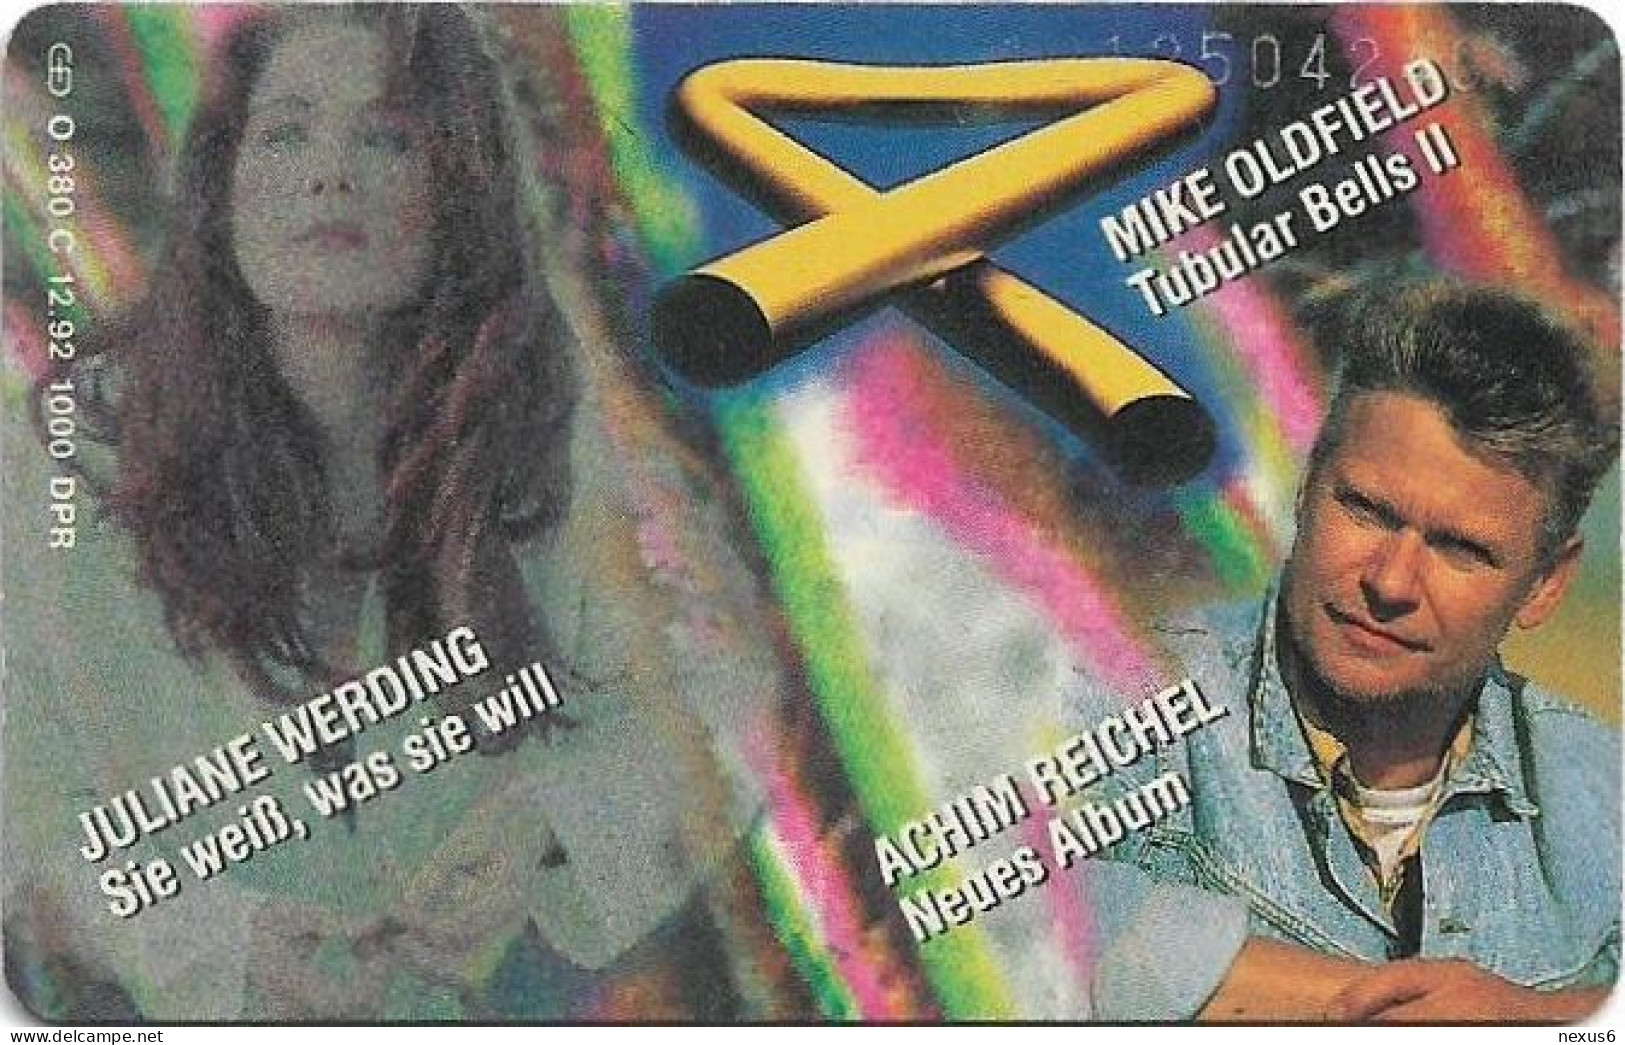 Germany - WEA Musik 13 - Juliane Werding, Mike Oldfield, Achim Reich - O 0380C - 12.1992, 6DM, 1.000ex, Used - O-Serie : Serie Clienti Esclusi Dal Servizio Delle Collezioni